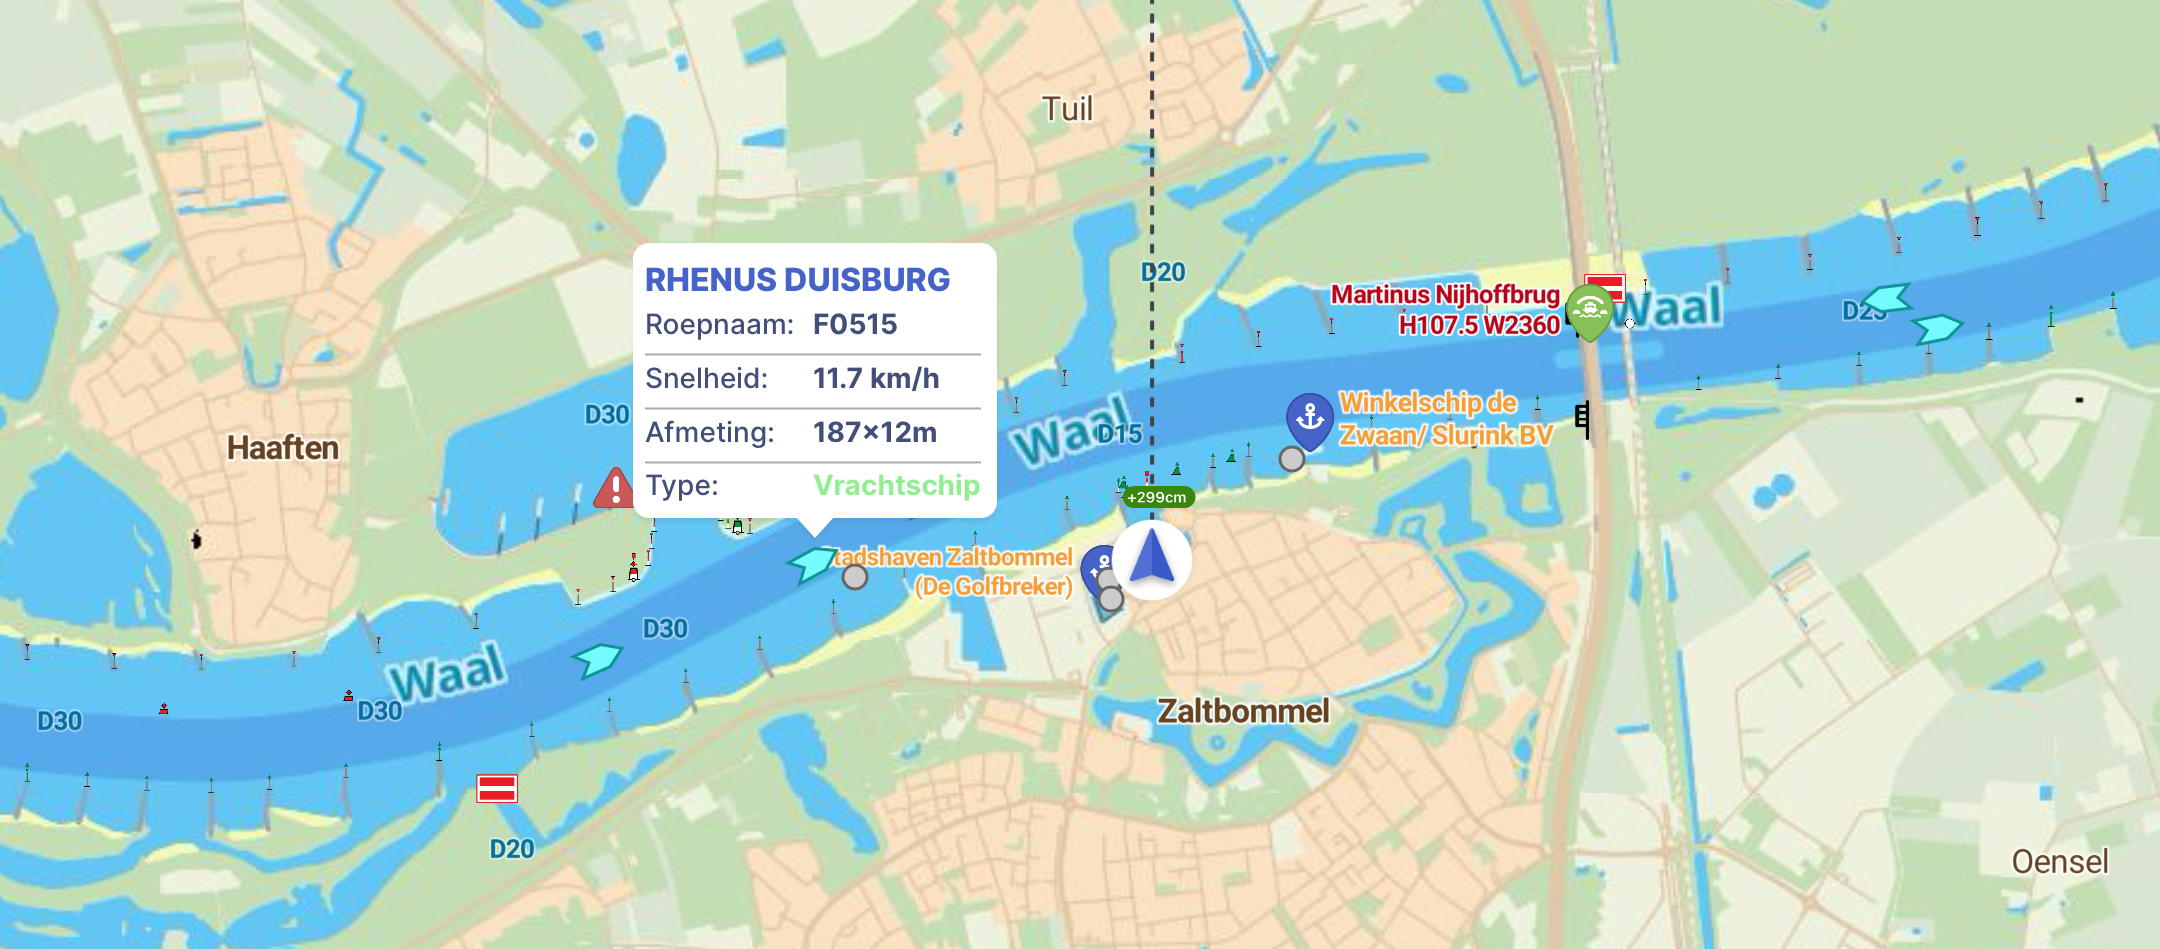 AIS in de Waterkaarten-app, op de Waal bij Zaltbommel.